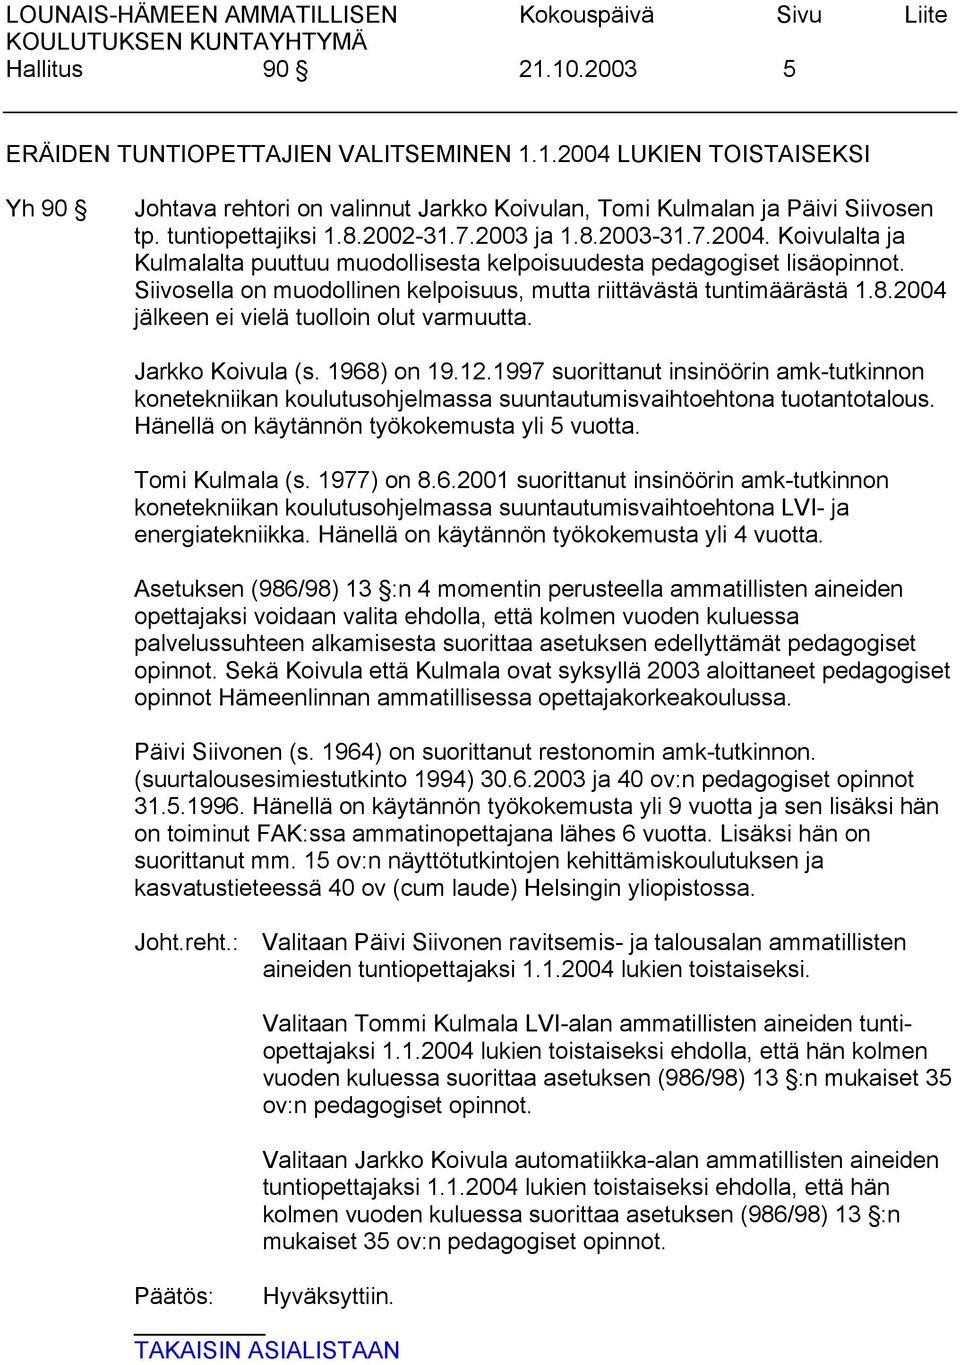 Jarkko Koivula (s. 1968) on 19.12.1997 suorittanut insinöörin amk-tutkinnon konetekniikan koulutusohjelmassa suuntautumisvaihtoehtona tuotantotalous. Hänellä on käytännön työkokemusta yli 5 vuotta.